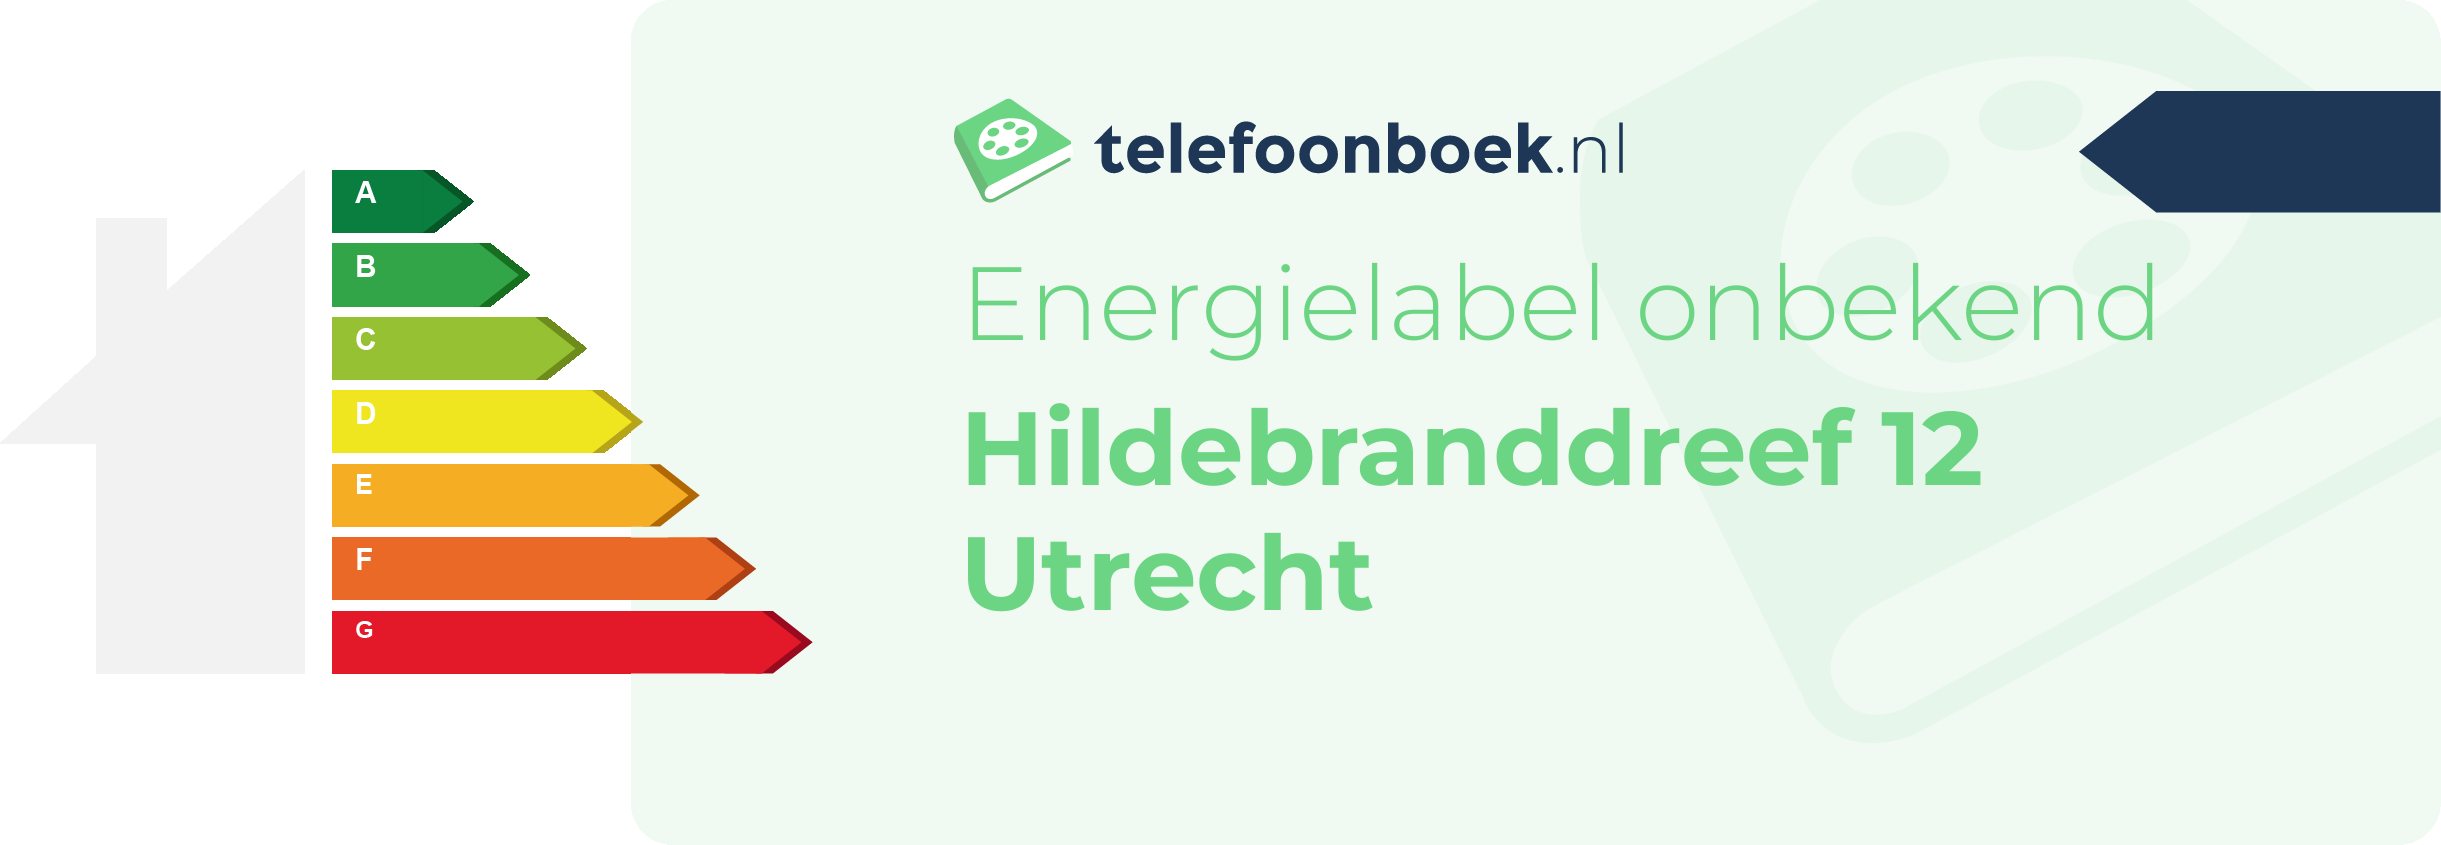 Energielabel Hildebranddreef 12 Utrecht